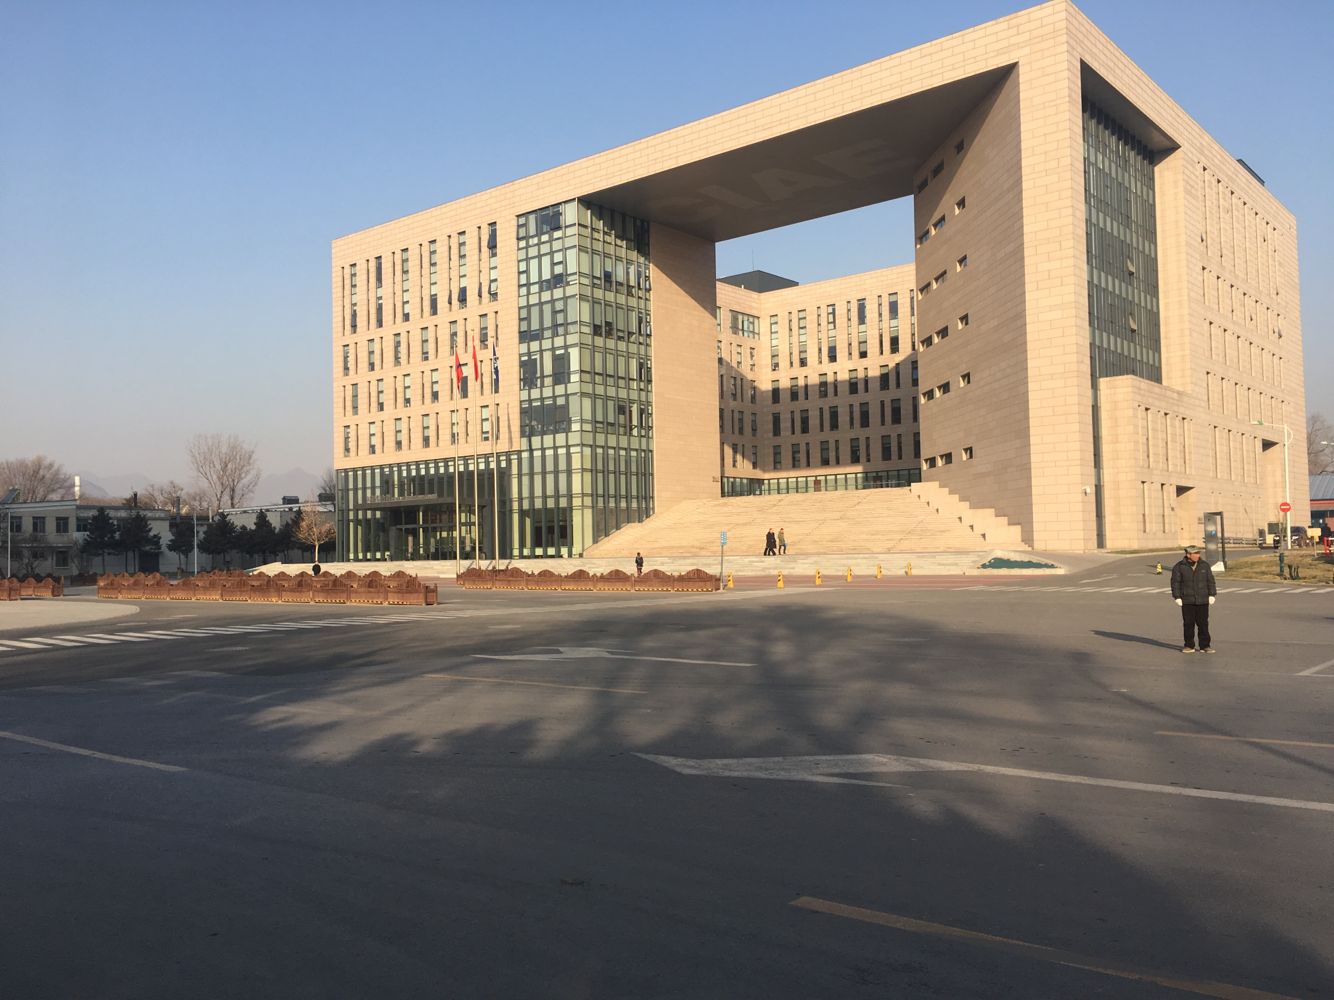 中国原子能科学研究院